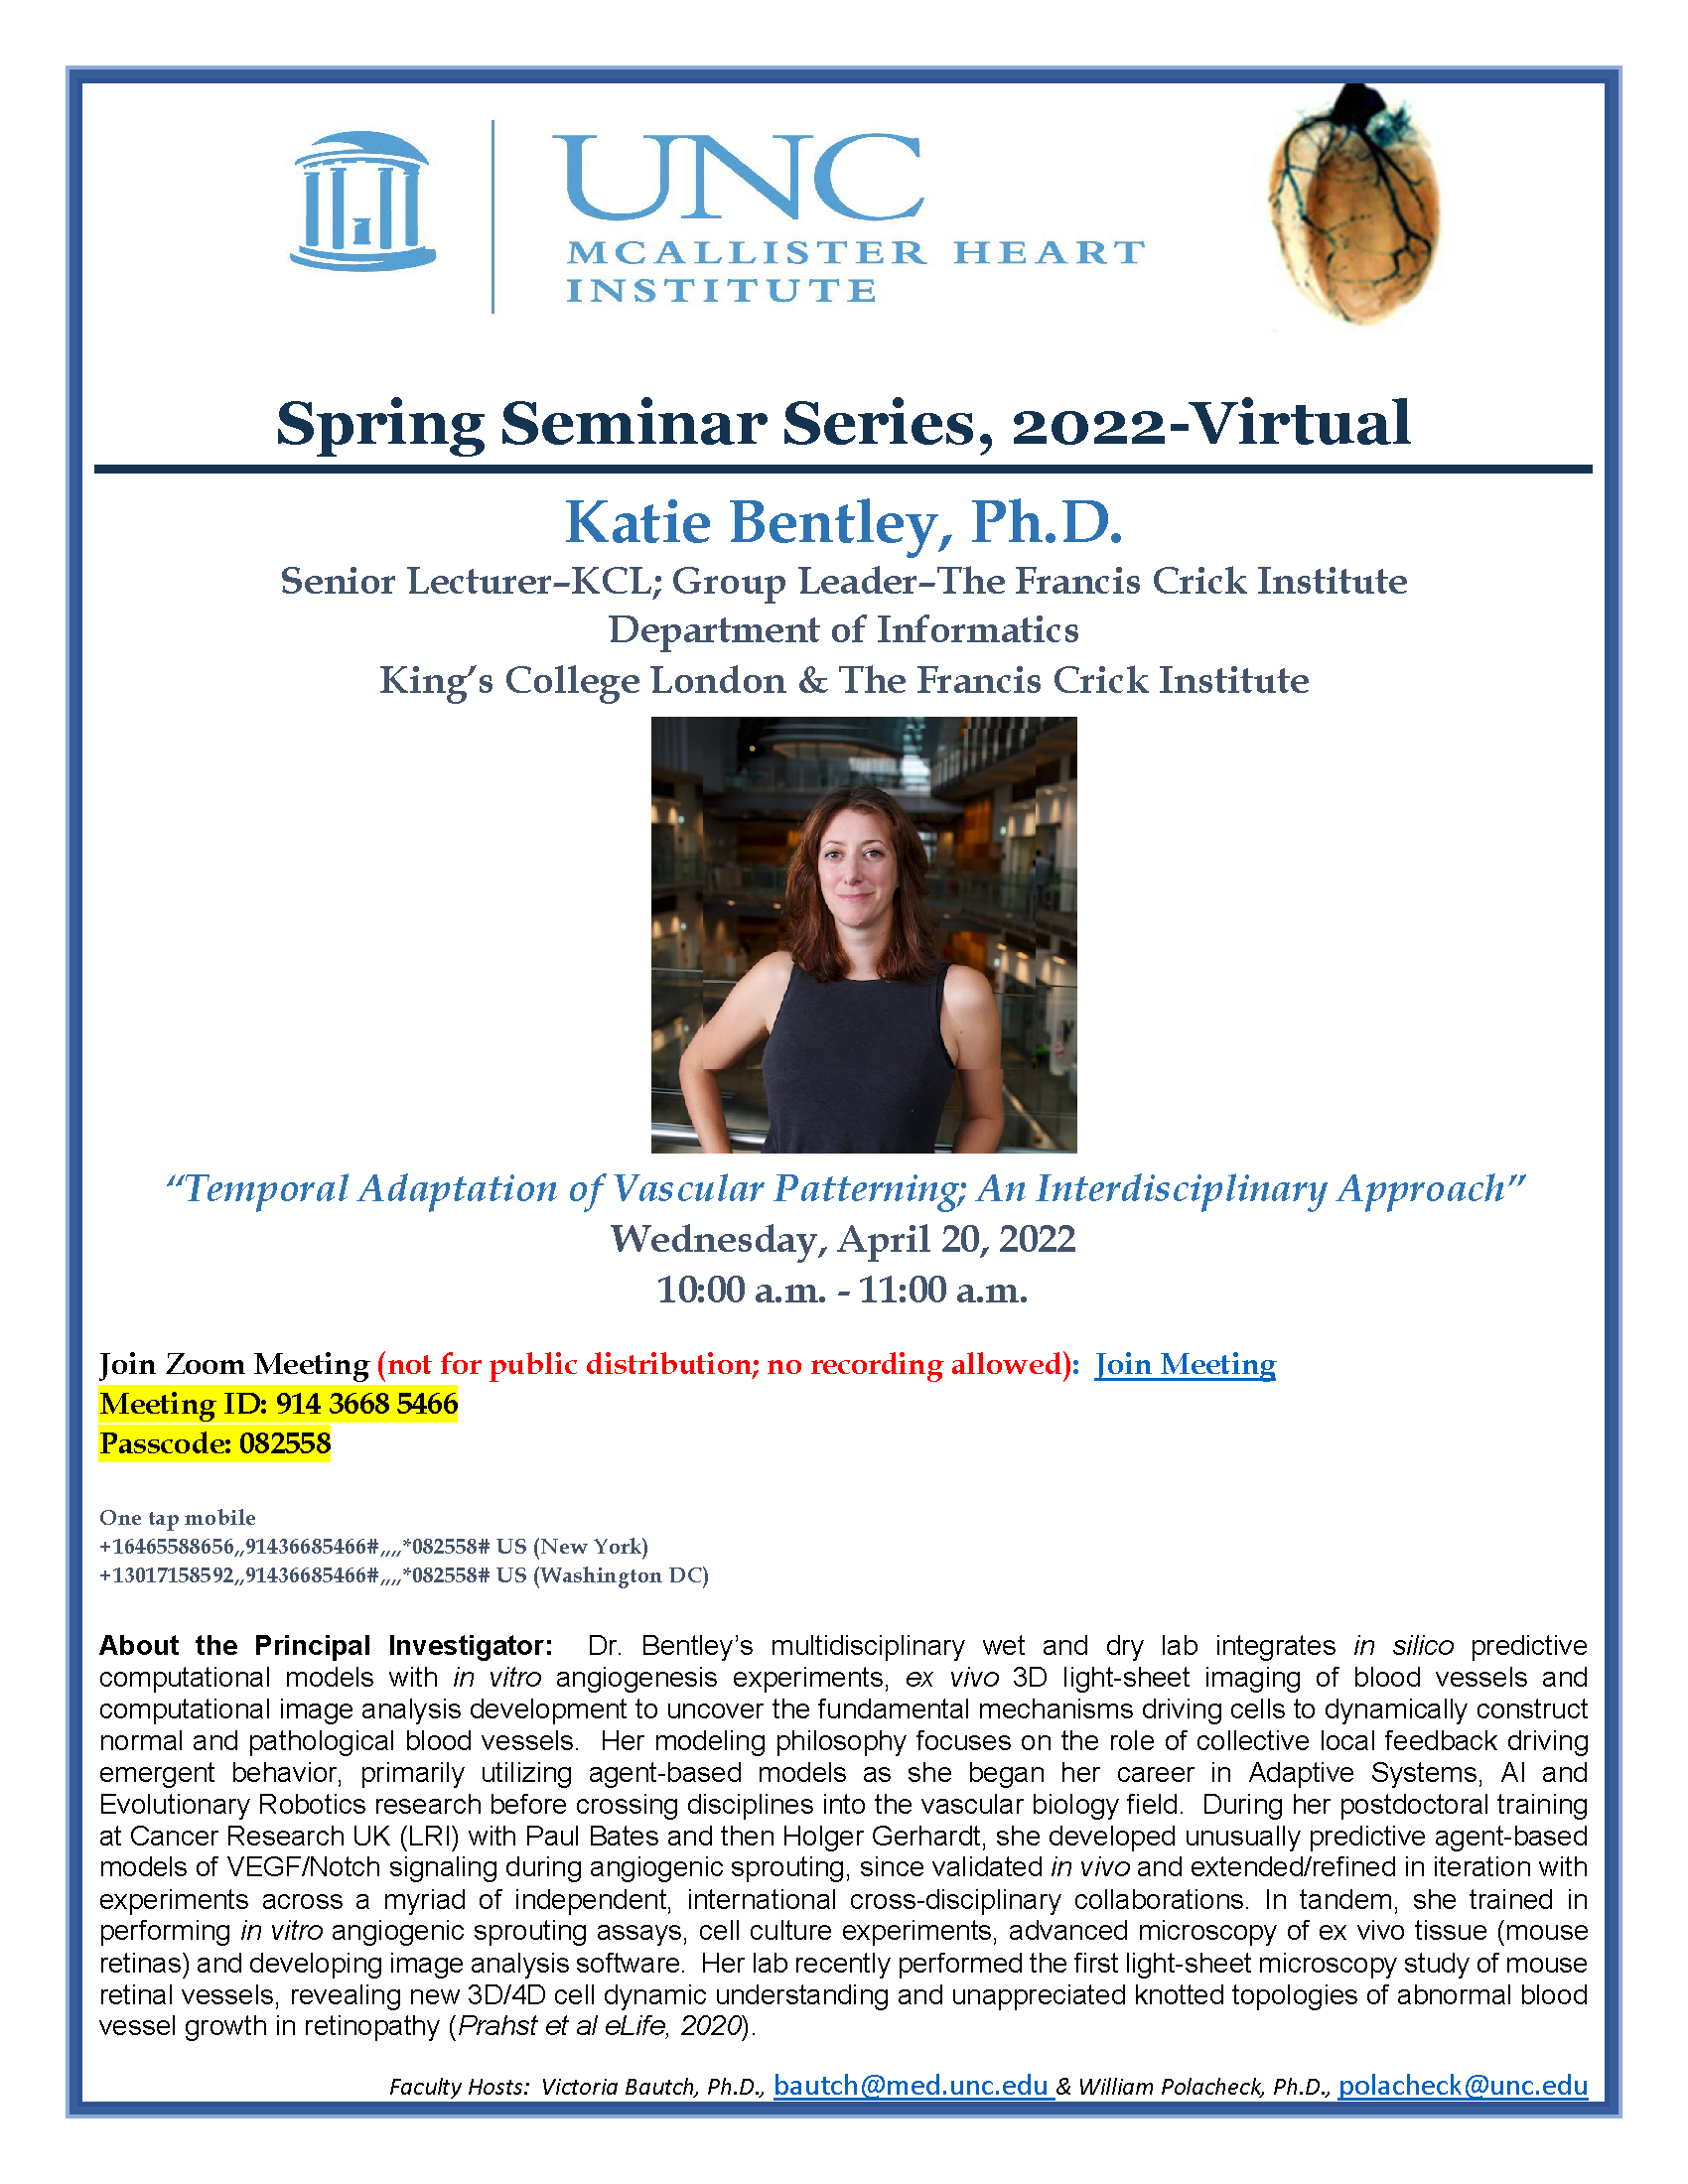 Katie Bentley, Ph.D.